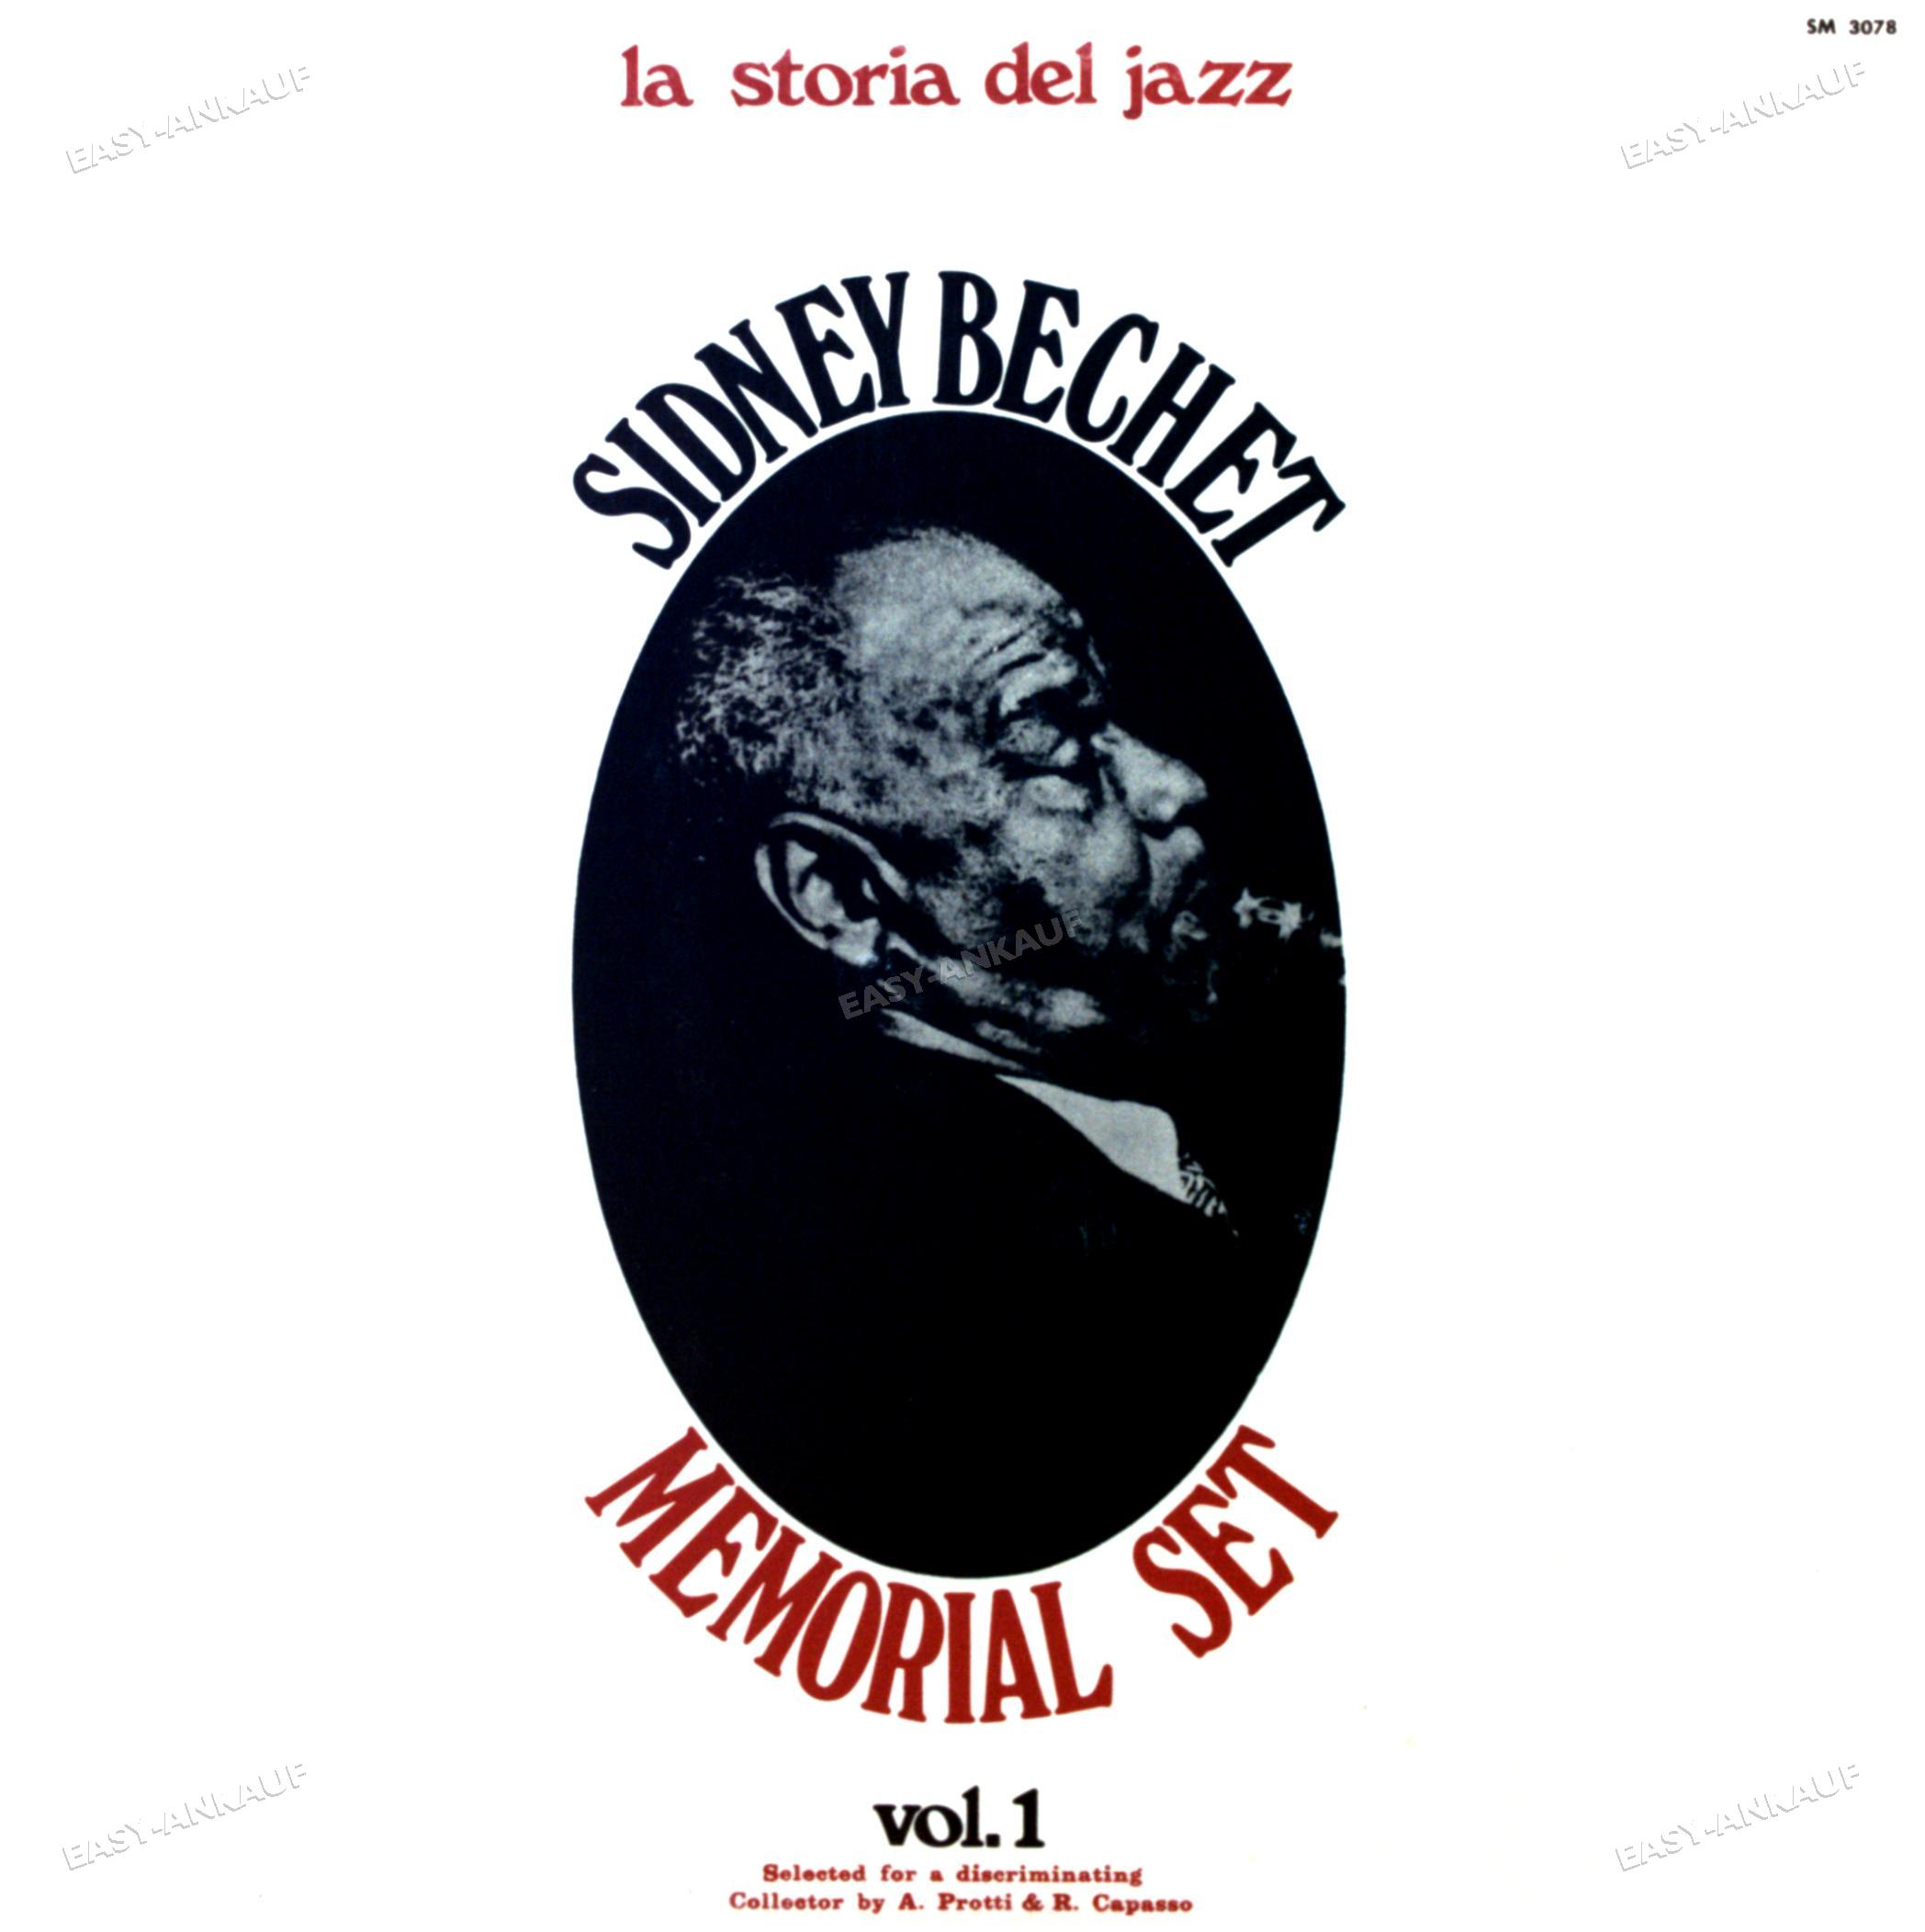 Sidney Bechet - Memorial Set Vol. 1 LP 1971 (VG+/VG+) '* - Afbeelding 1 van 1